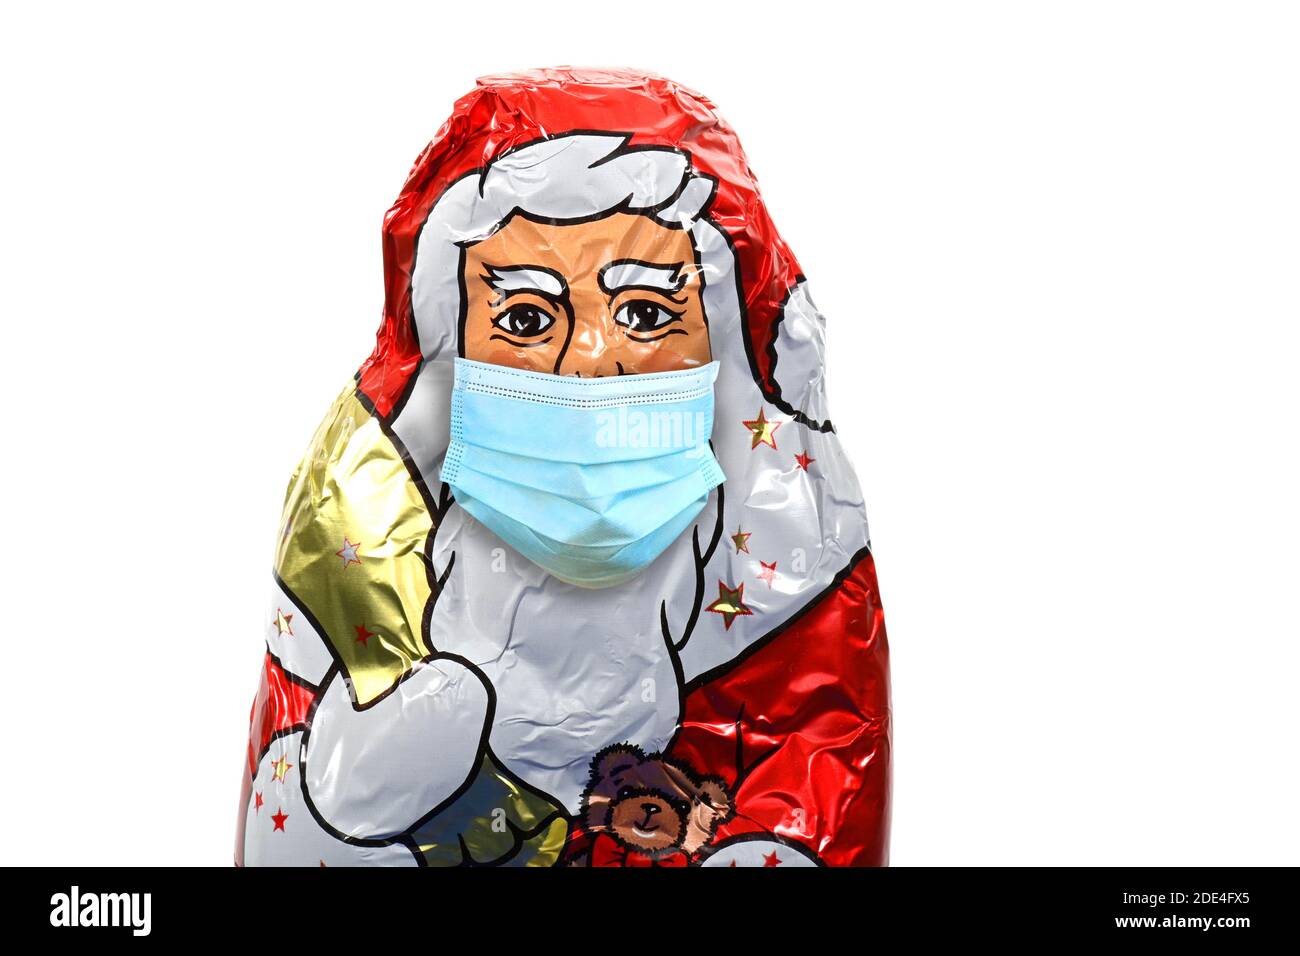 Symbolisches Bild von Weihnachten während der Coronakrise, ein SchokoladenSanta Claus mit Gesichtsmaske, Stuttgart, Baden-Württemberg, Deutschland Stockfoto